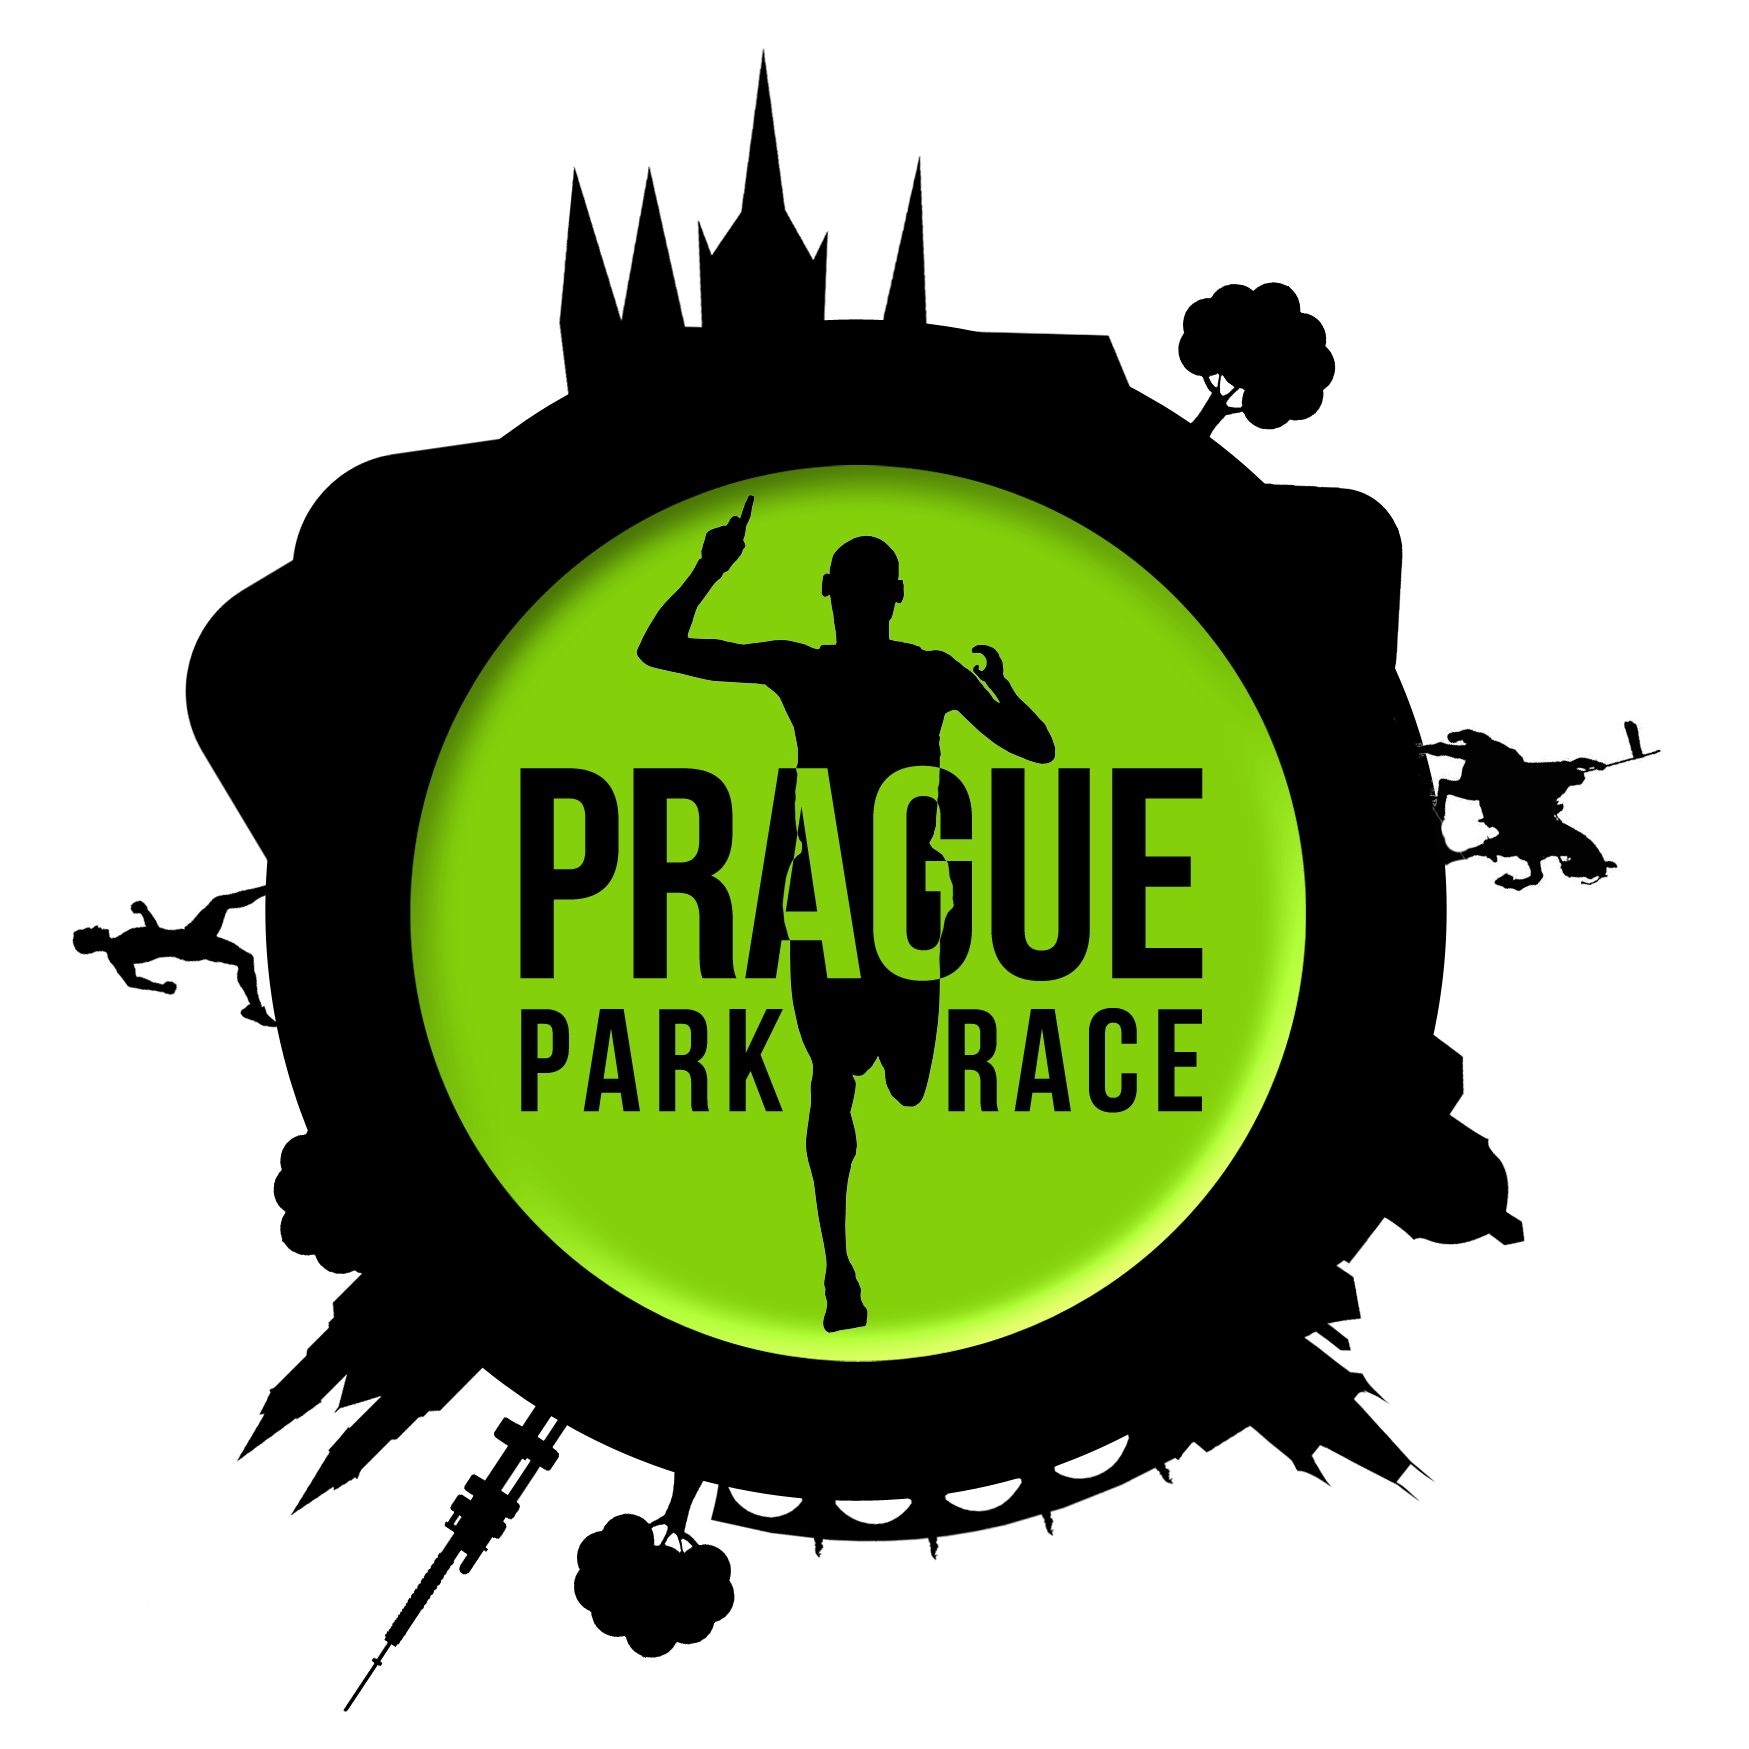 Prague Park Race